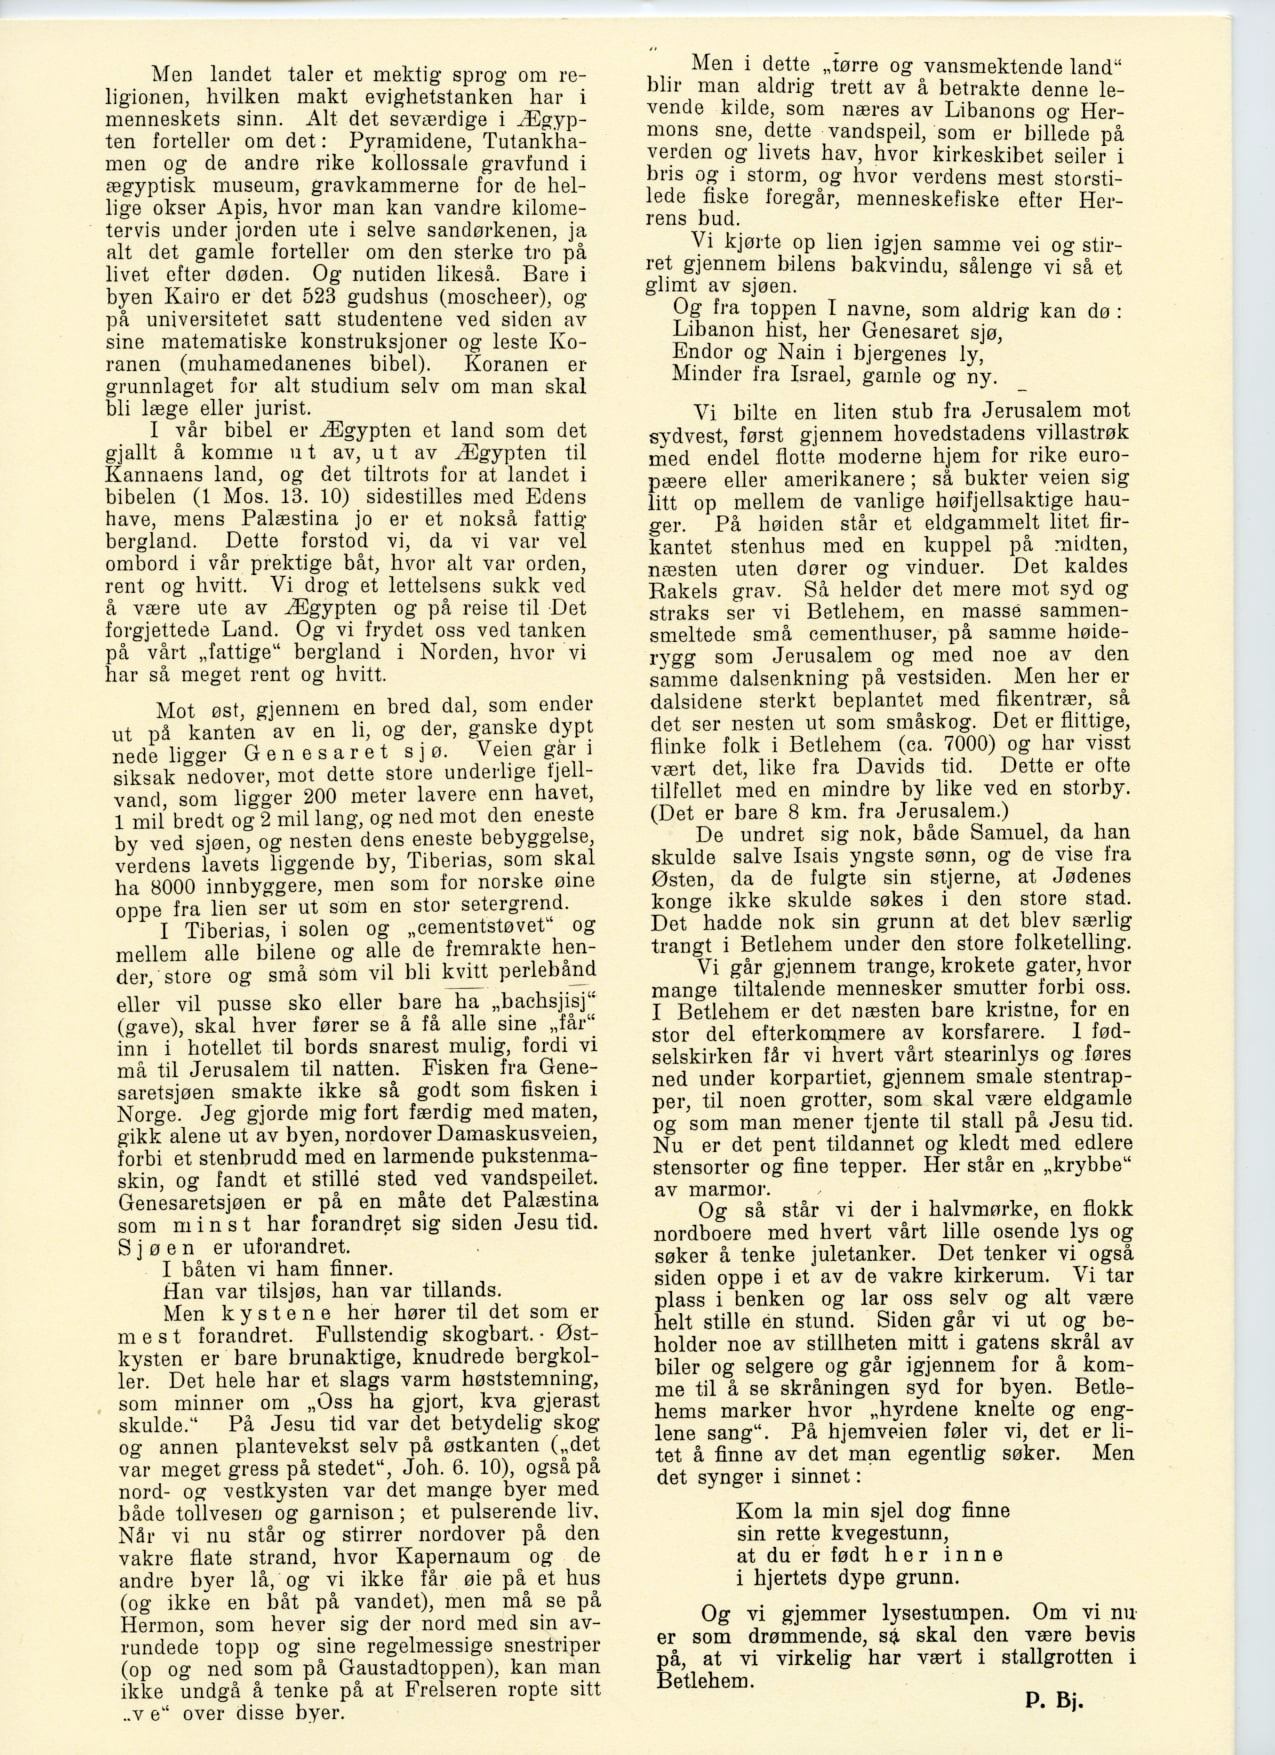 Til Palæestina av Peder Bjerkeseth, Modum Menighetsblad 1931, side 2